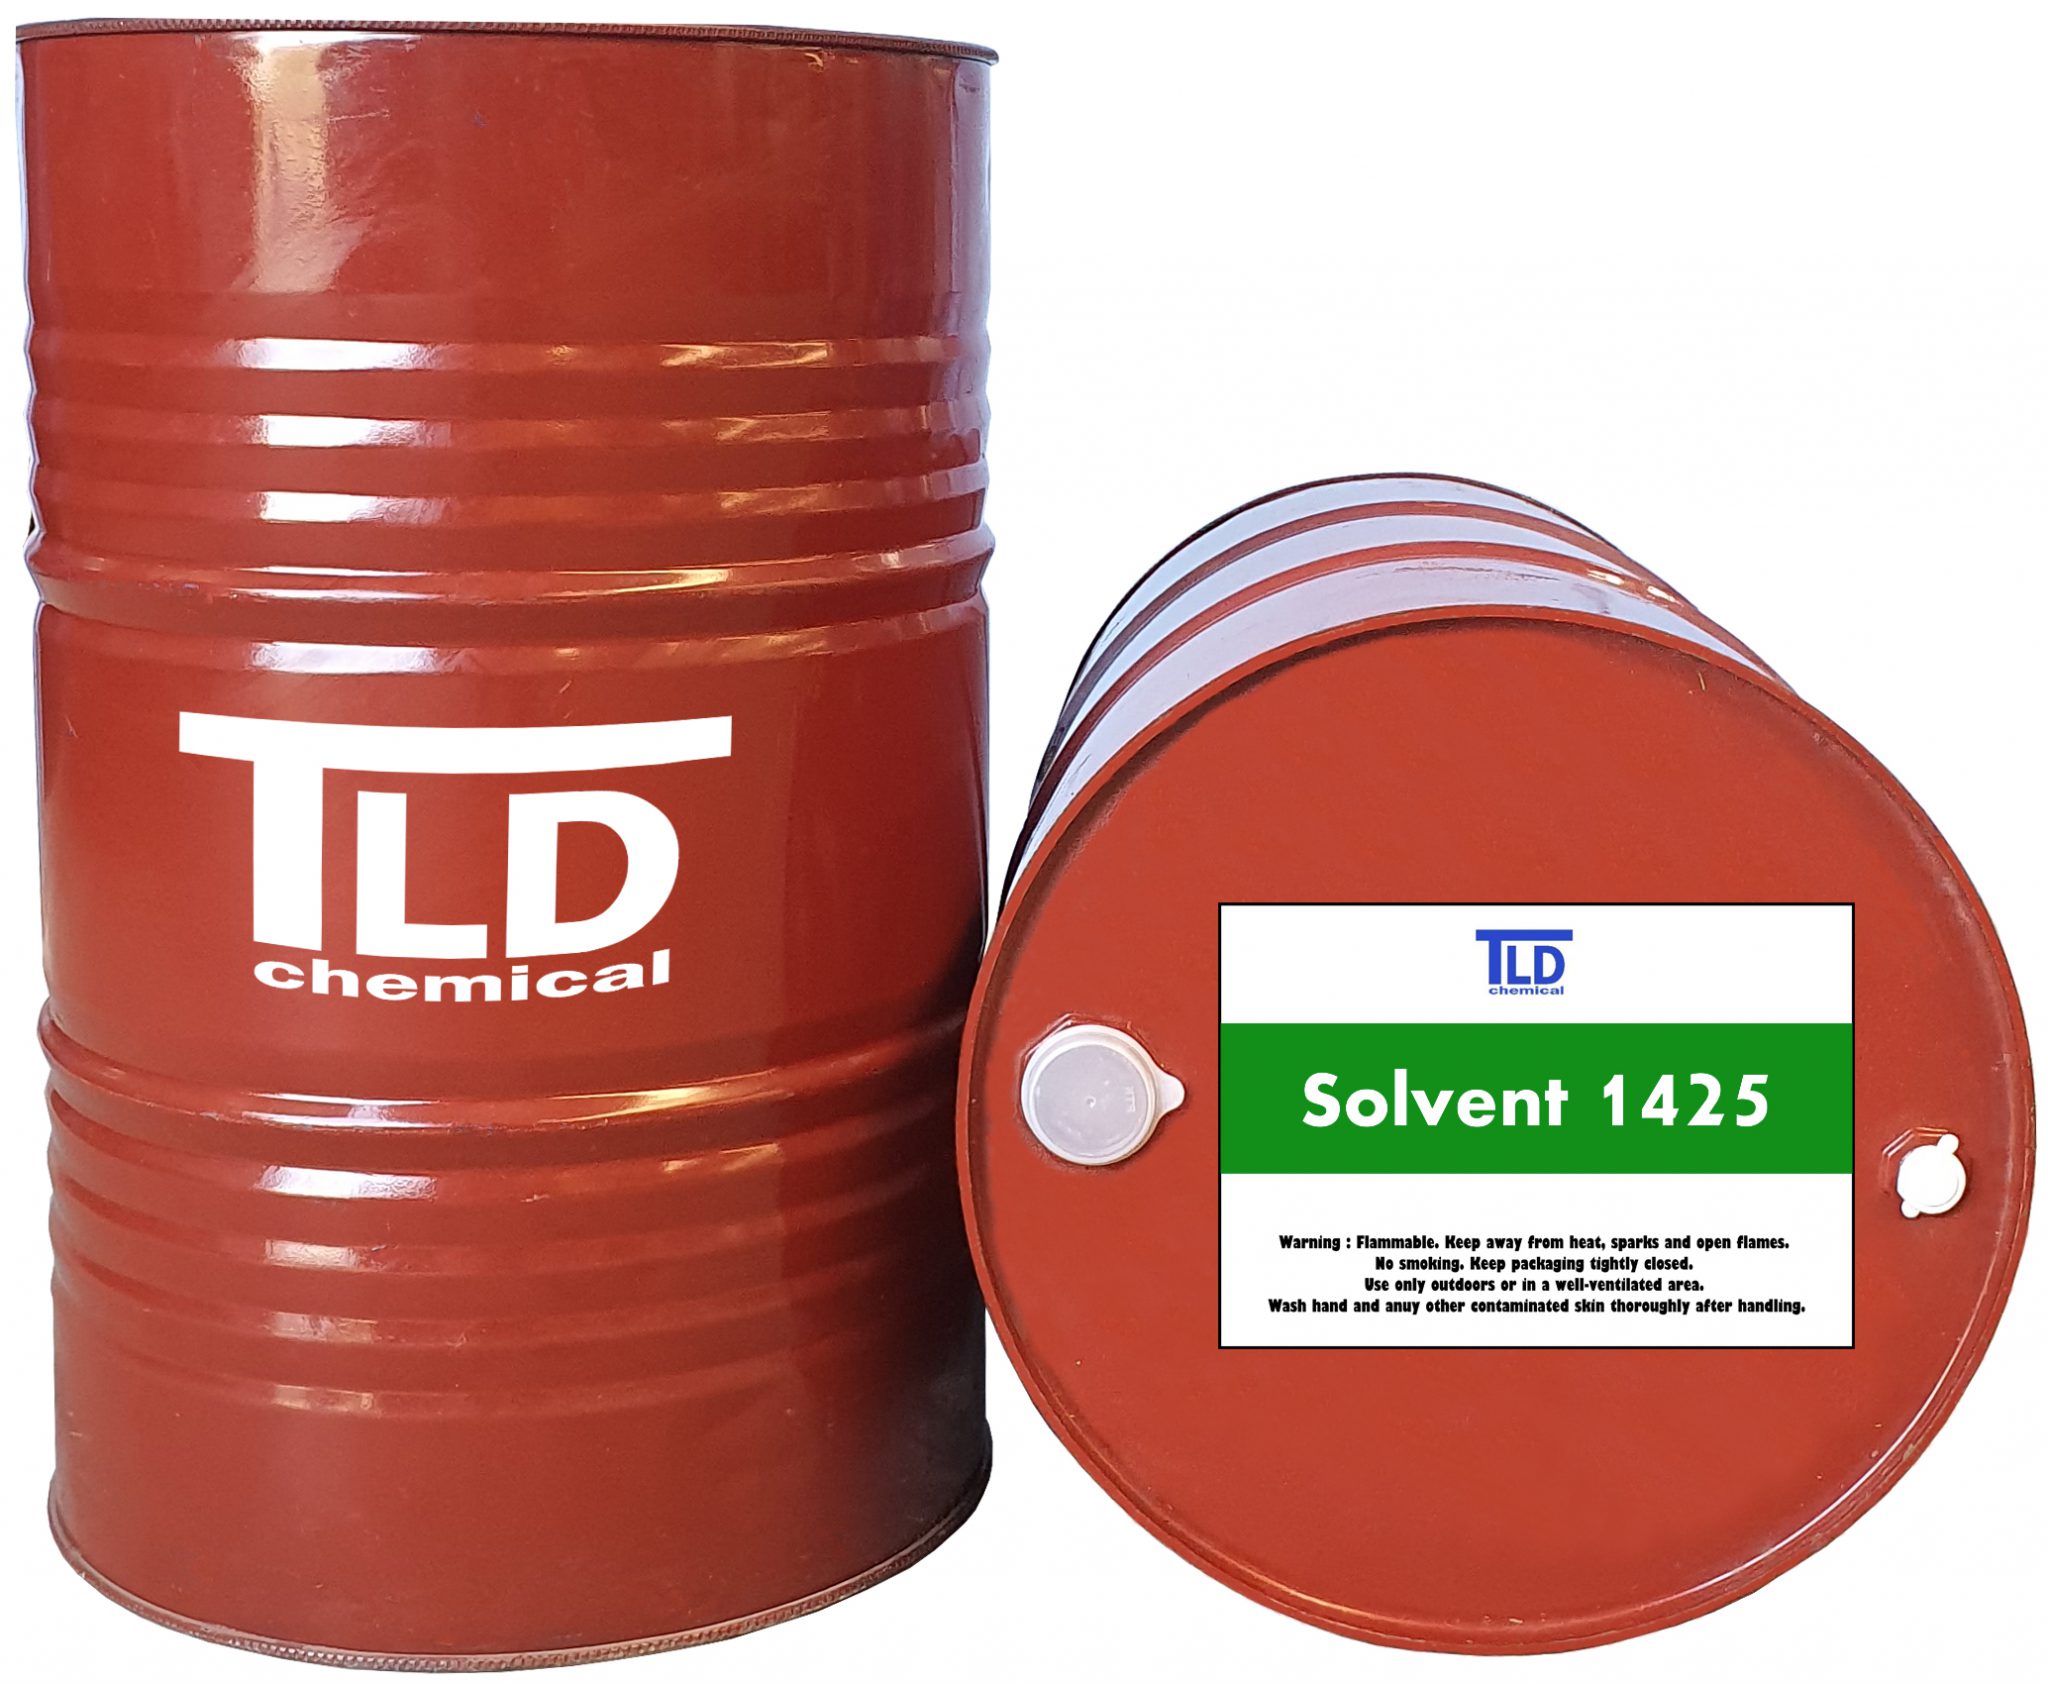 solvent-1425-t-l-d-chemical